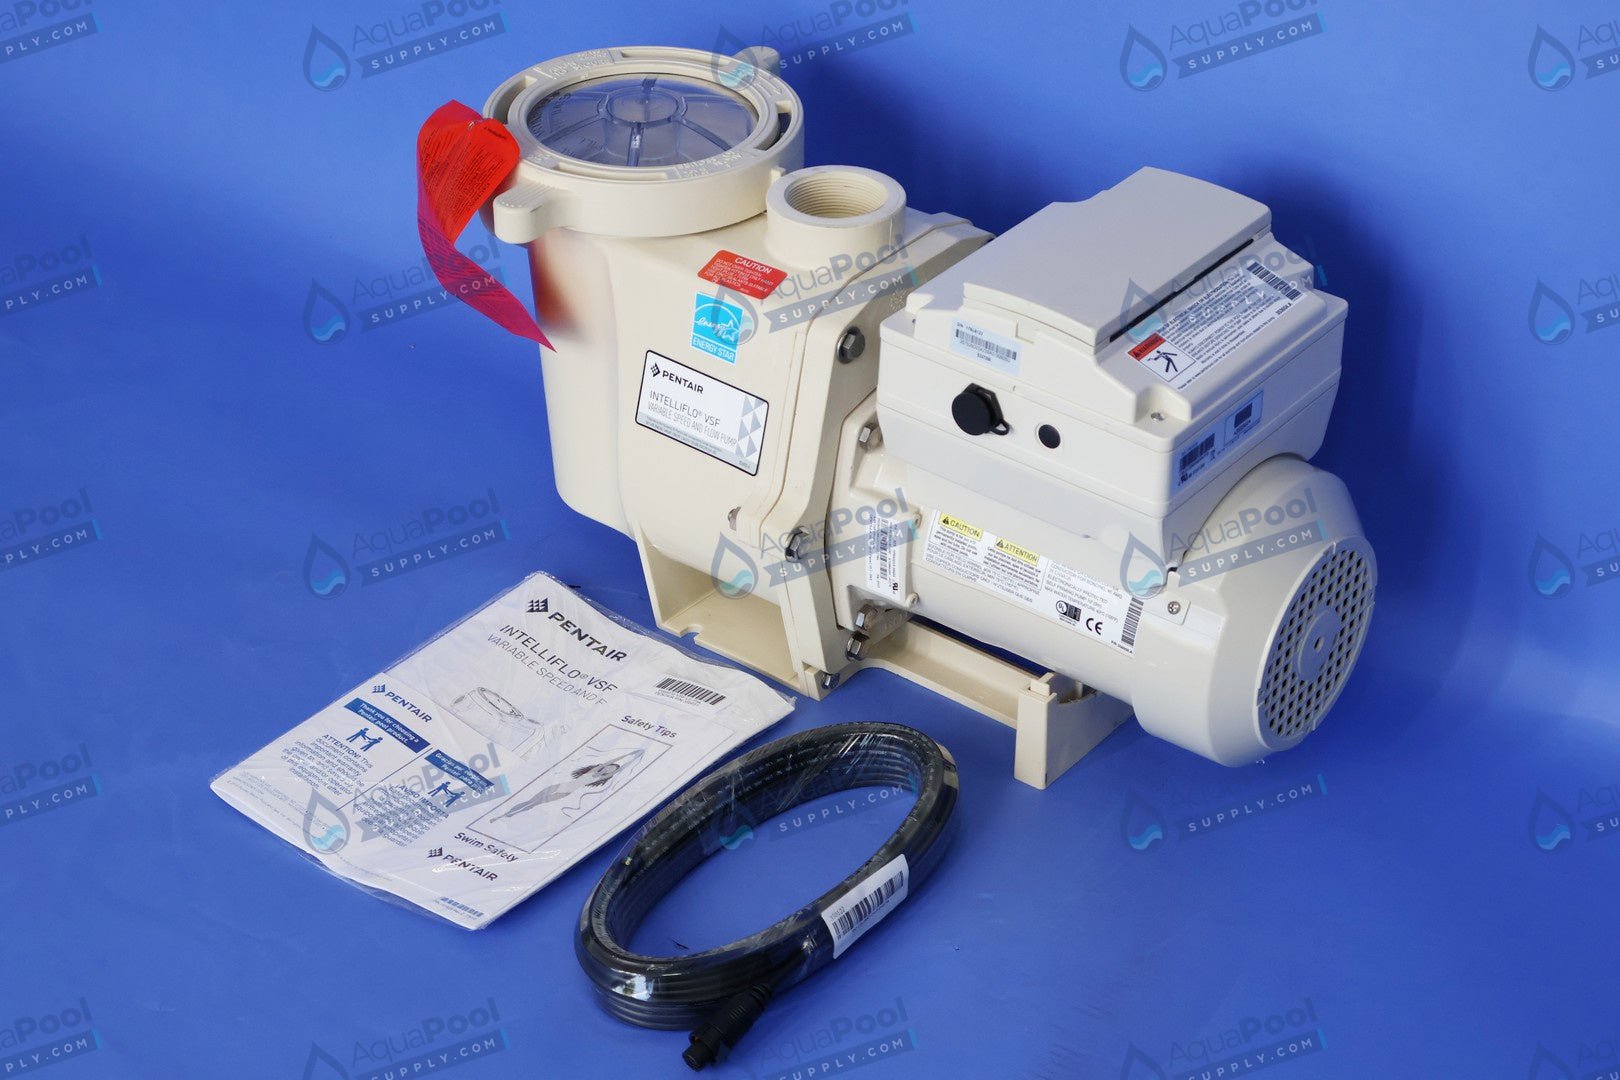 Pentair IntelliFlo® Variable Speed Pump EC-011028 (011056) - Variable Speed Pumps - img-10